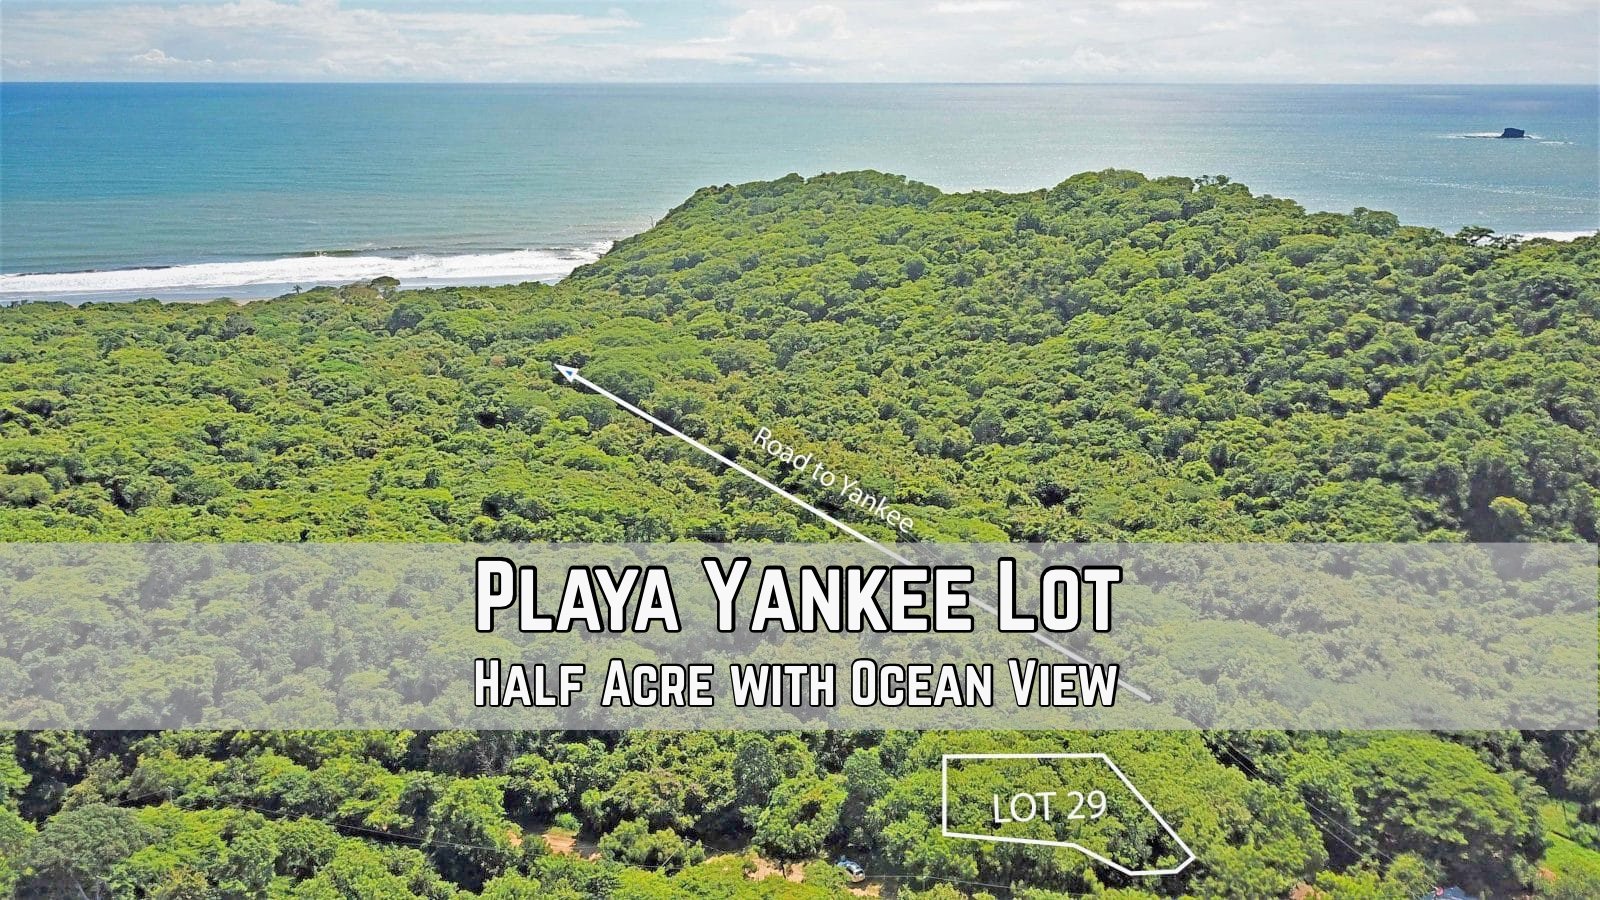 Playa Yankee San Juan Del Sur Property Reale Estate For Sale San Juan Del Sur Nicaragua4.jpg